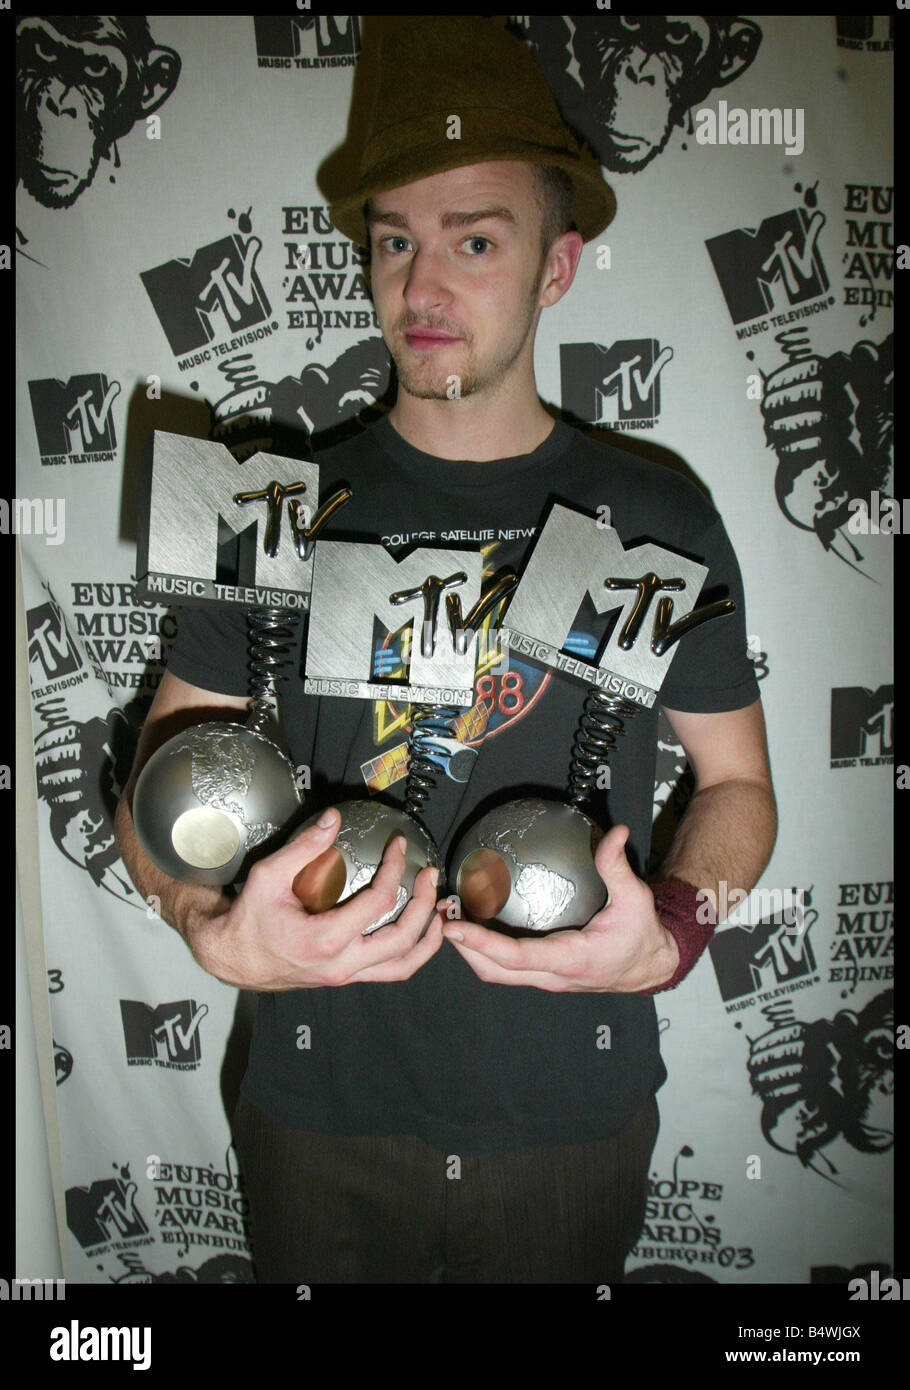 Amerikanischen pop-star Justin Timberlake bei den MTV Europe Awards 2003 in Edinburgh, Schottland im Bild halten die drei statt vergibt er gewann heute Abend beste männliche beste Pop- und besten Albumkategorien November 2003 Stockfoto